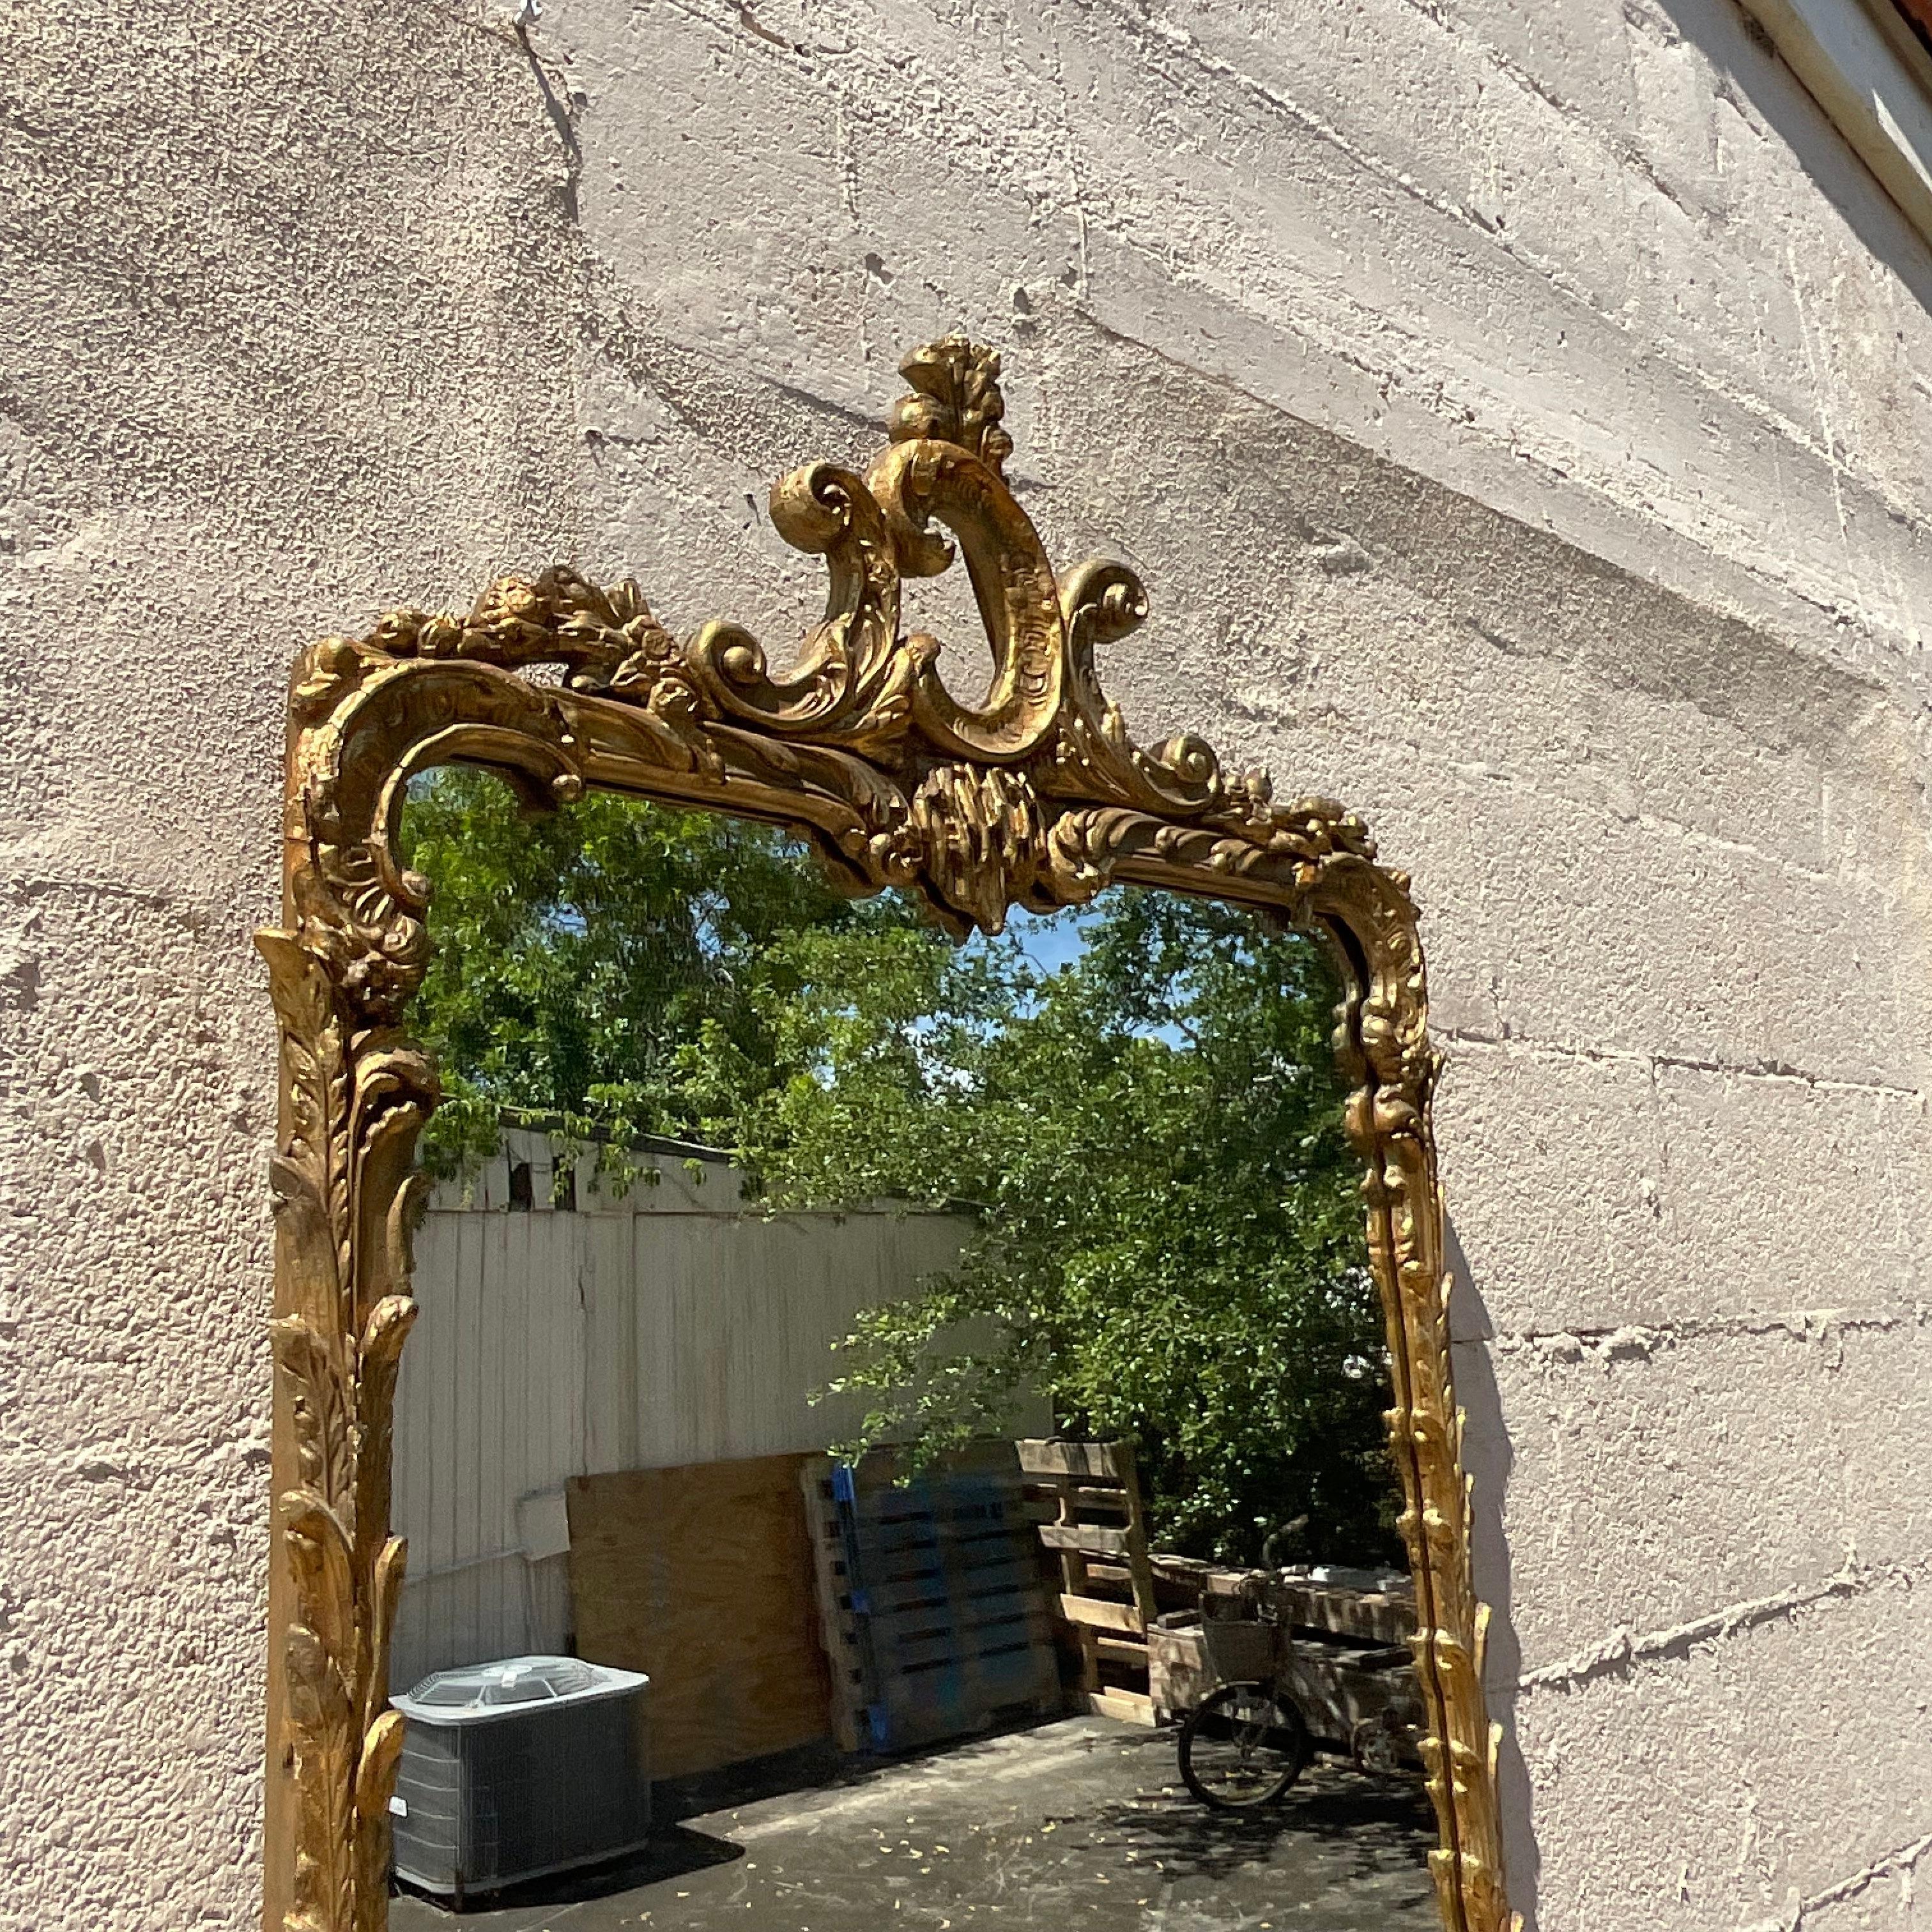 Erleben Sie zeitlose Eleganz mit unserem vergoldeten Vintage-Regency-Spiegel. Dieser in Amerika gefertigte Spiegel hat einen luxuriösen vergoldeten Rahmen, der den klassischen Regency-Stil mit raffiniertem Glamour verbindet und so einen raffinierten